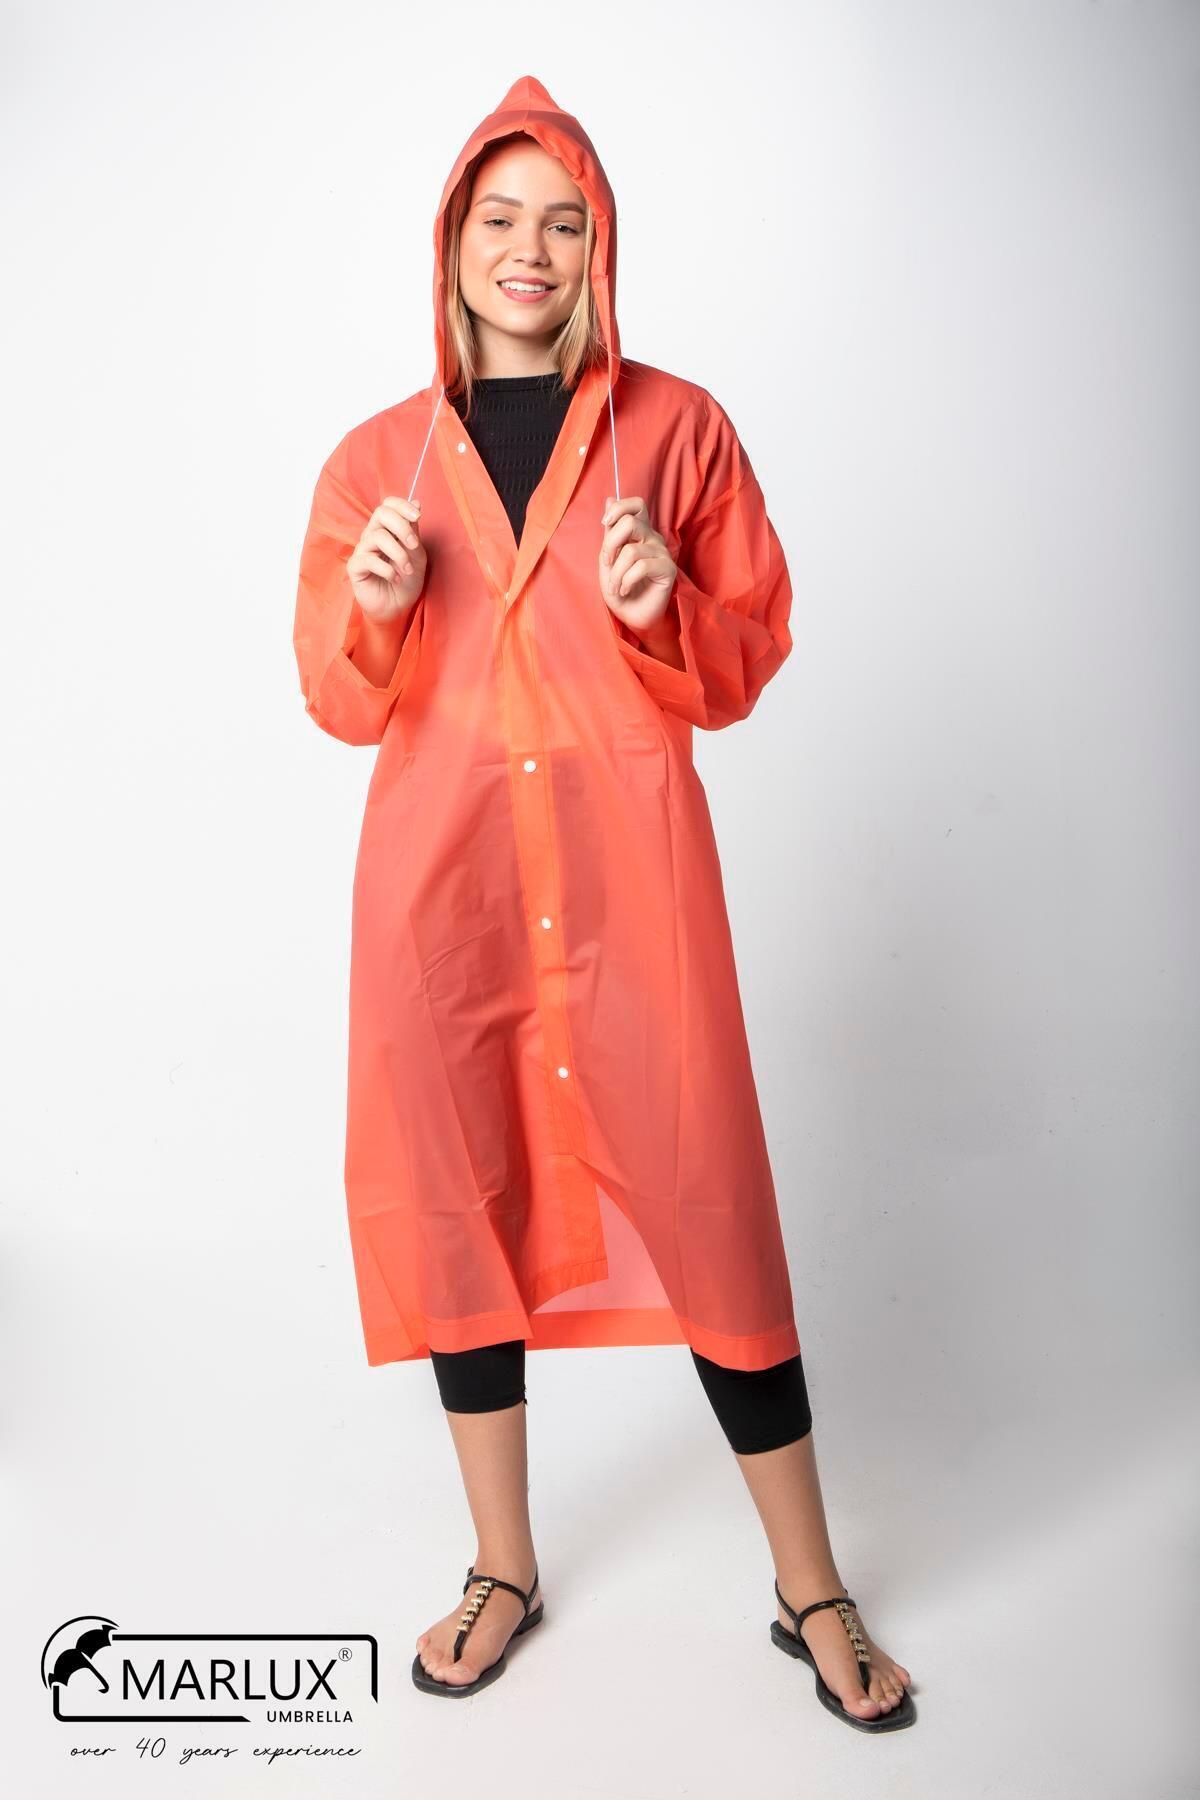 Marlux Kadın Erkek Yağmurluk Kapüşonlu Çıtçıtlı Eva Turuncu Yağmurluk M21mrc881r14